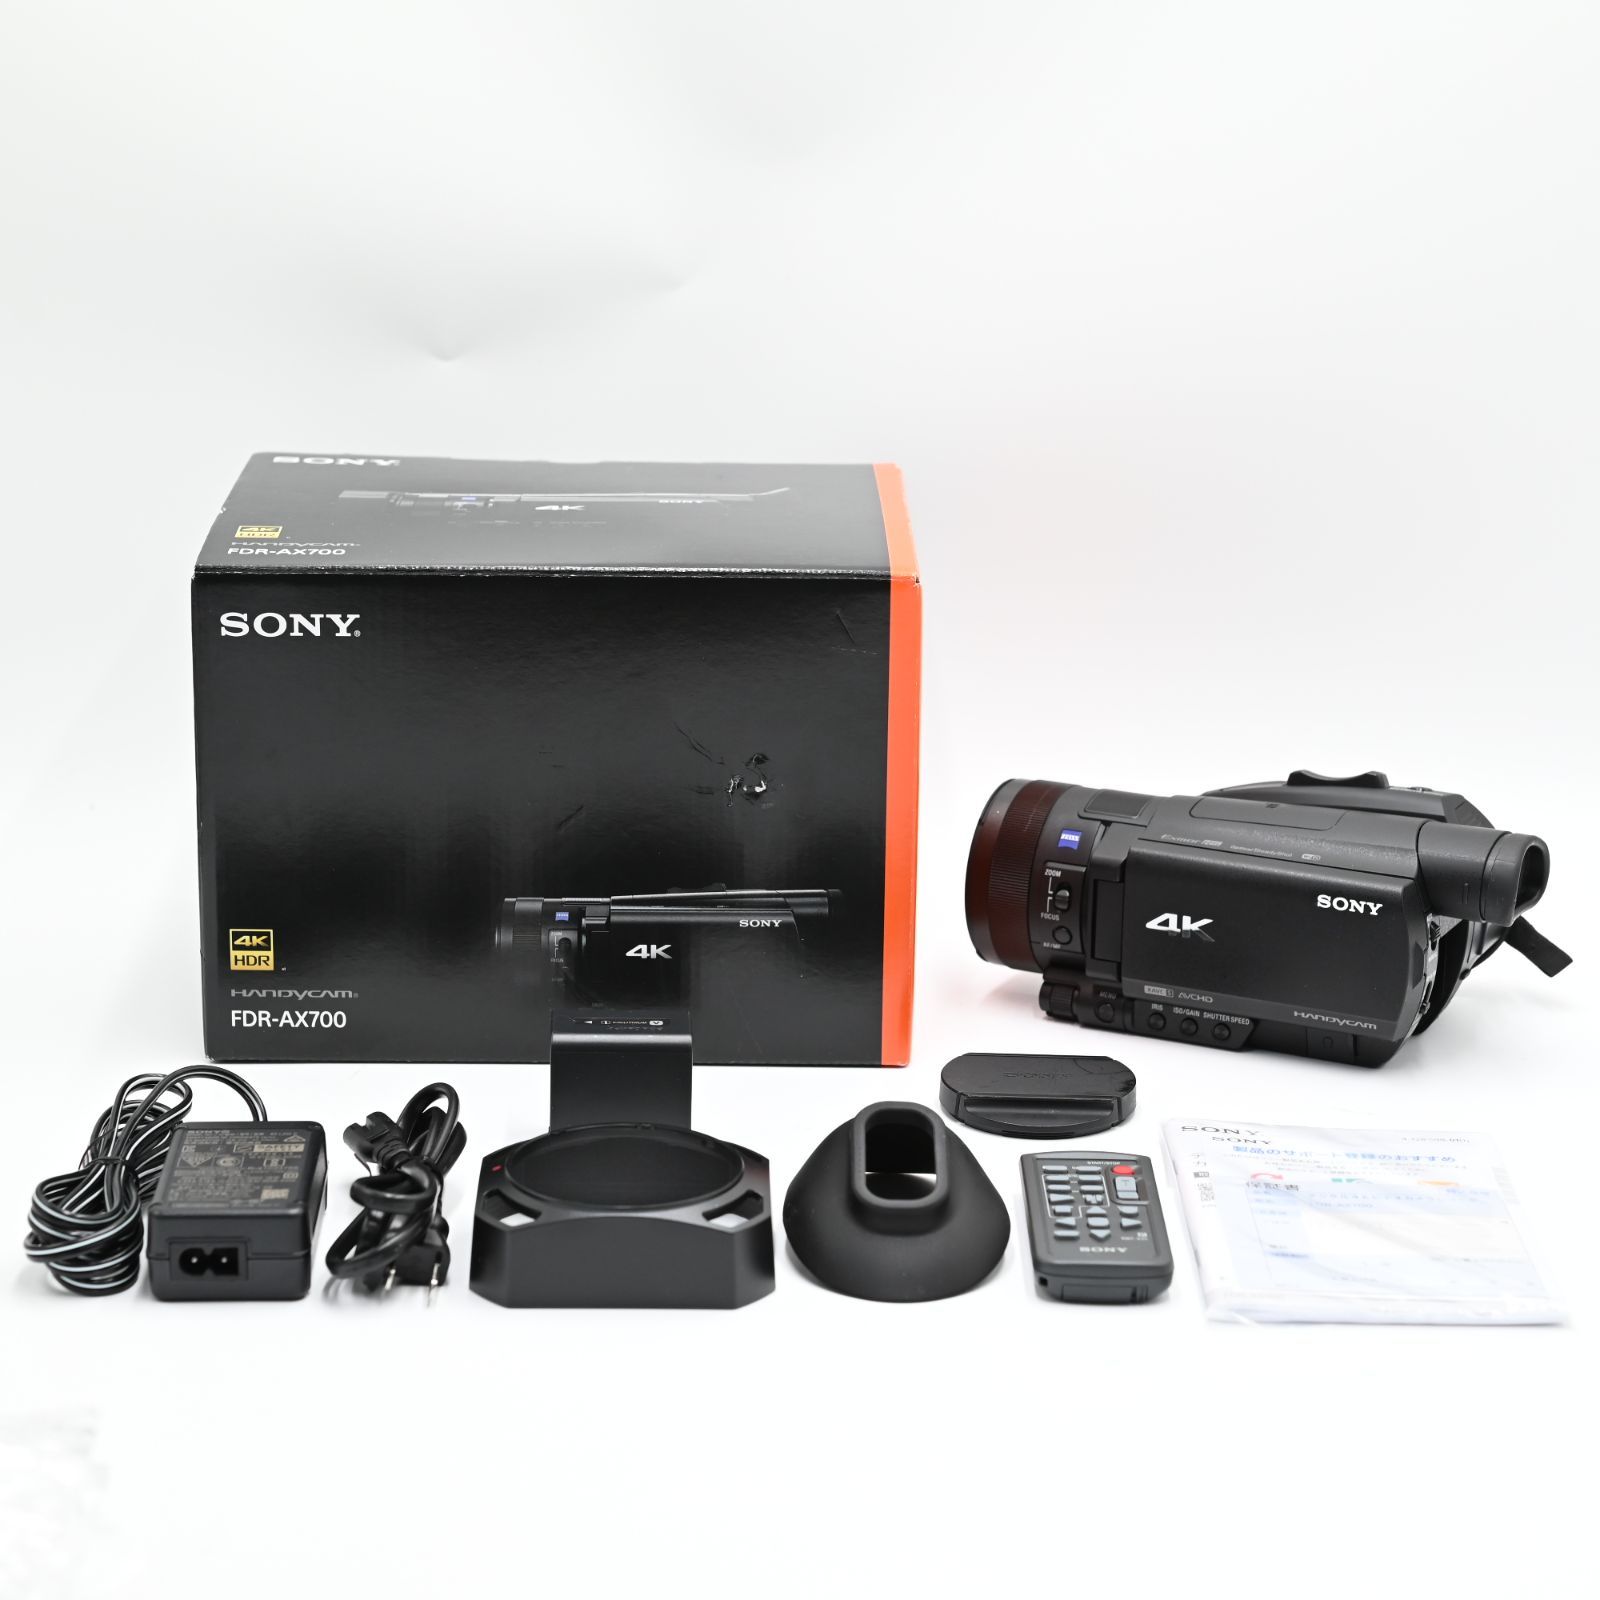 sony fdr-ax700 未使用品に近い製品の販売します - カメラ